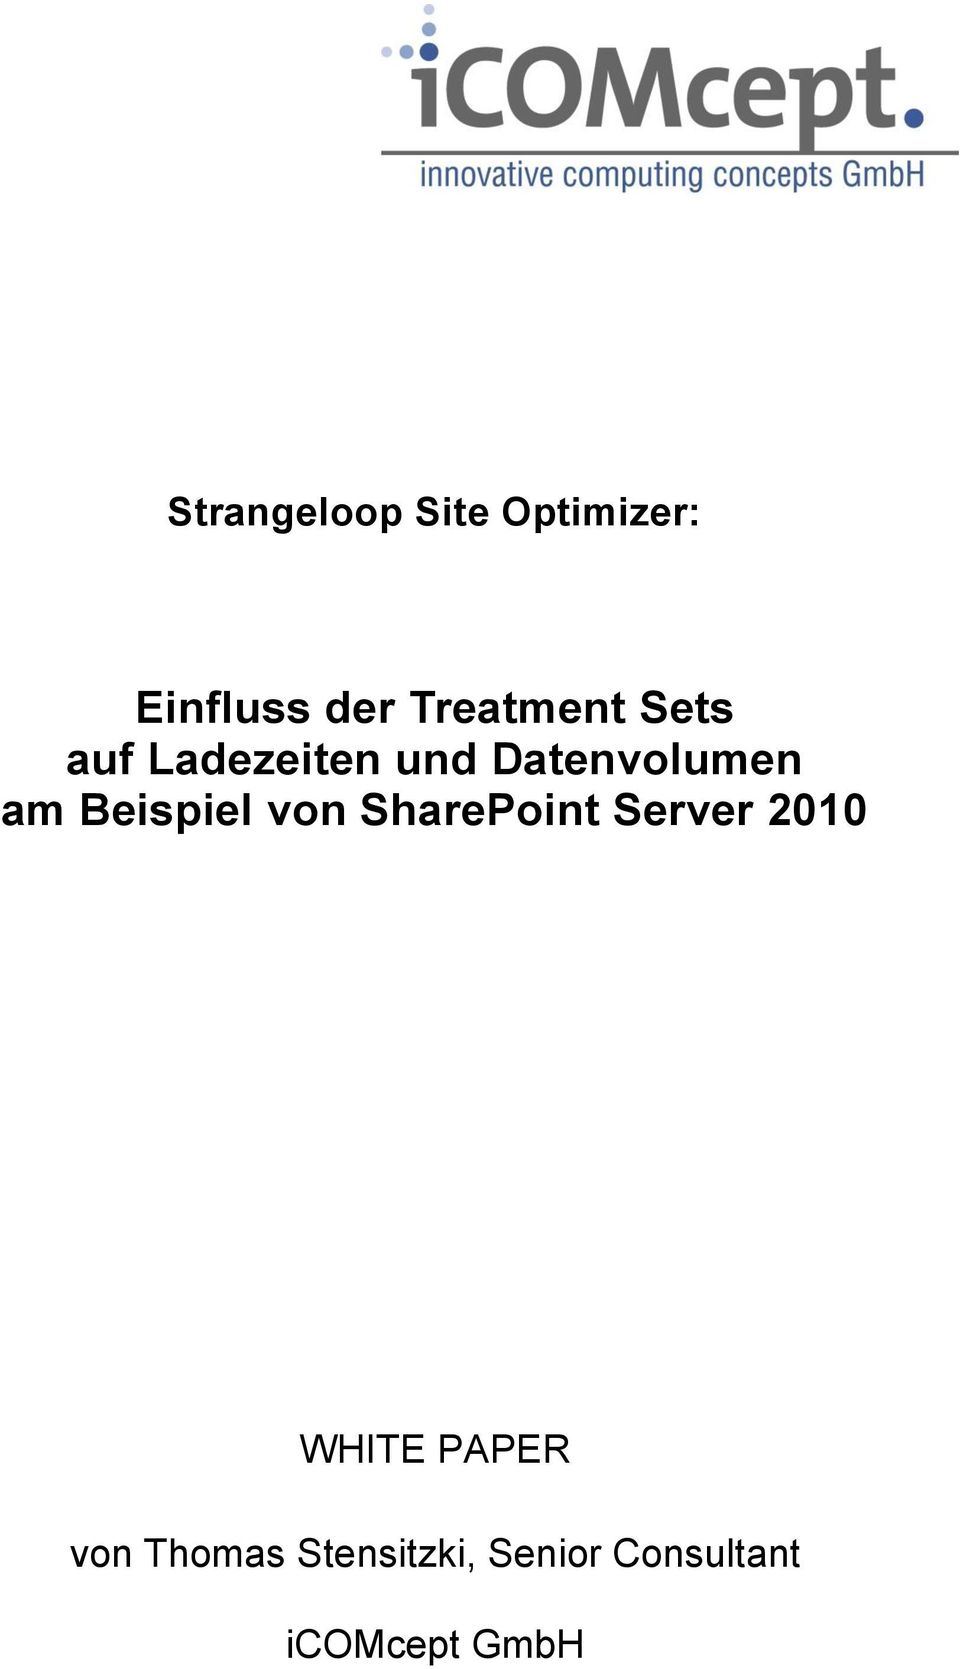 Beispiel von SharePoint Server 2010